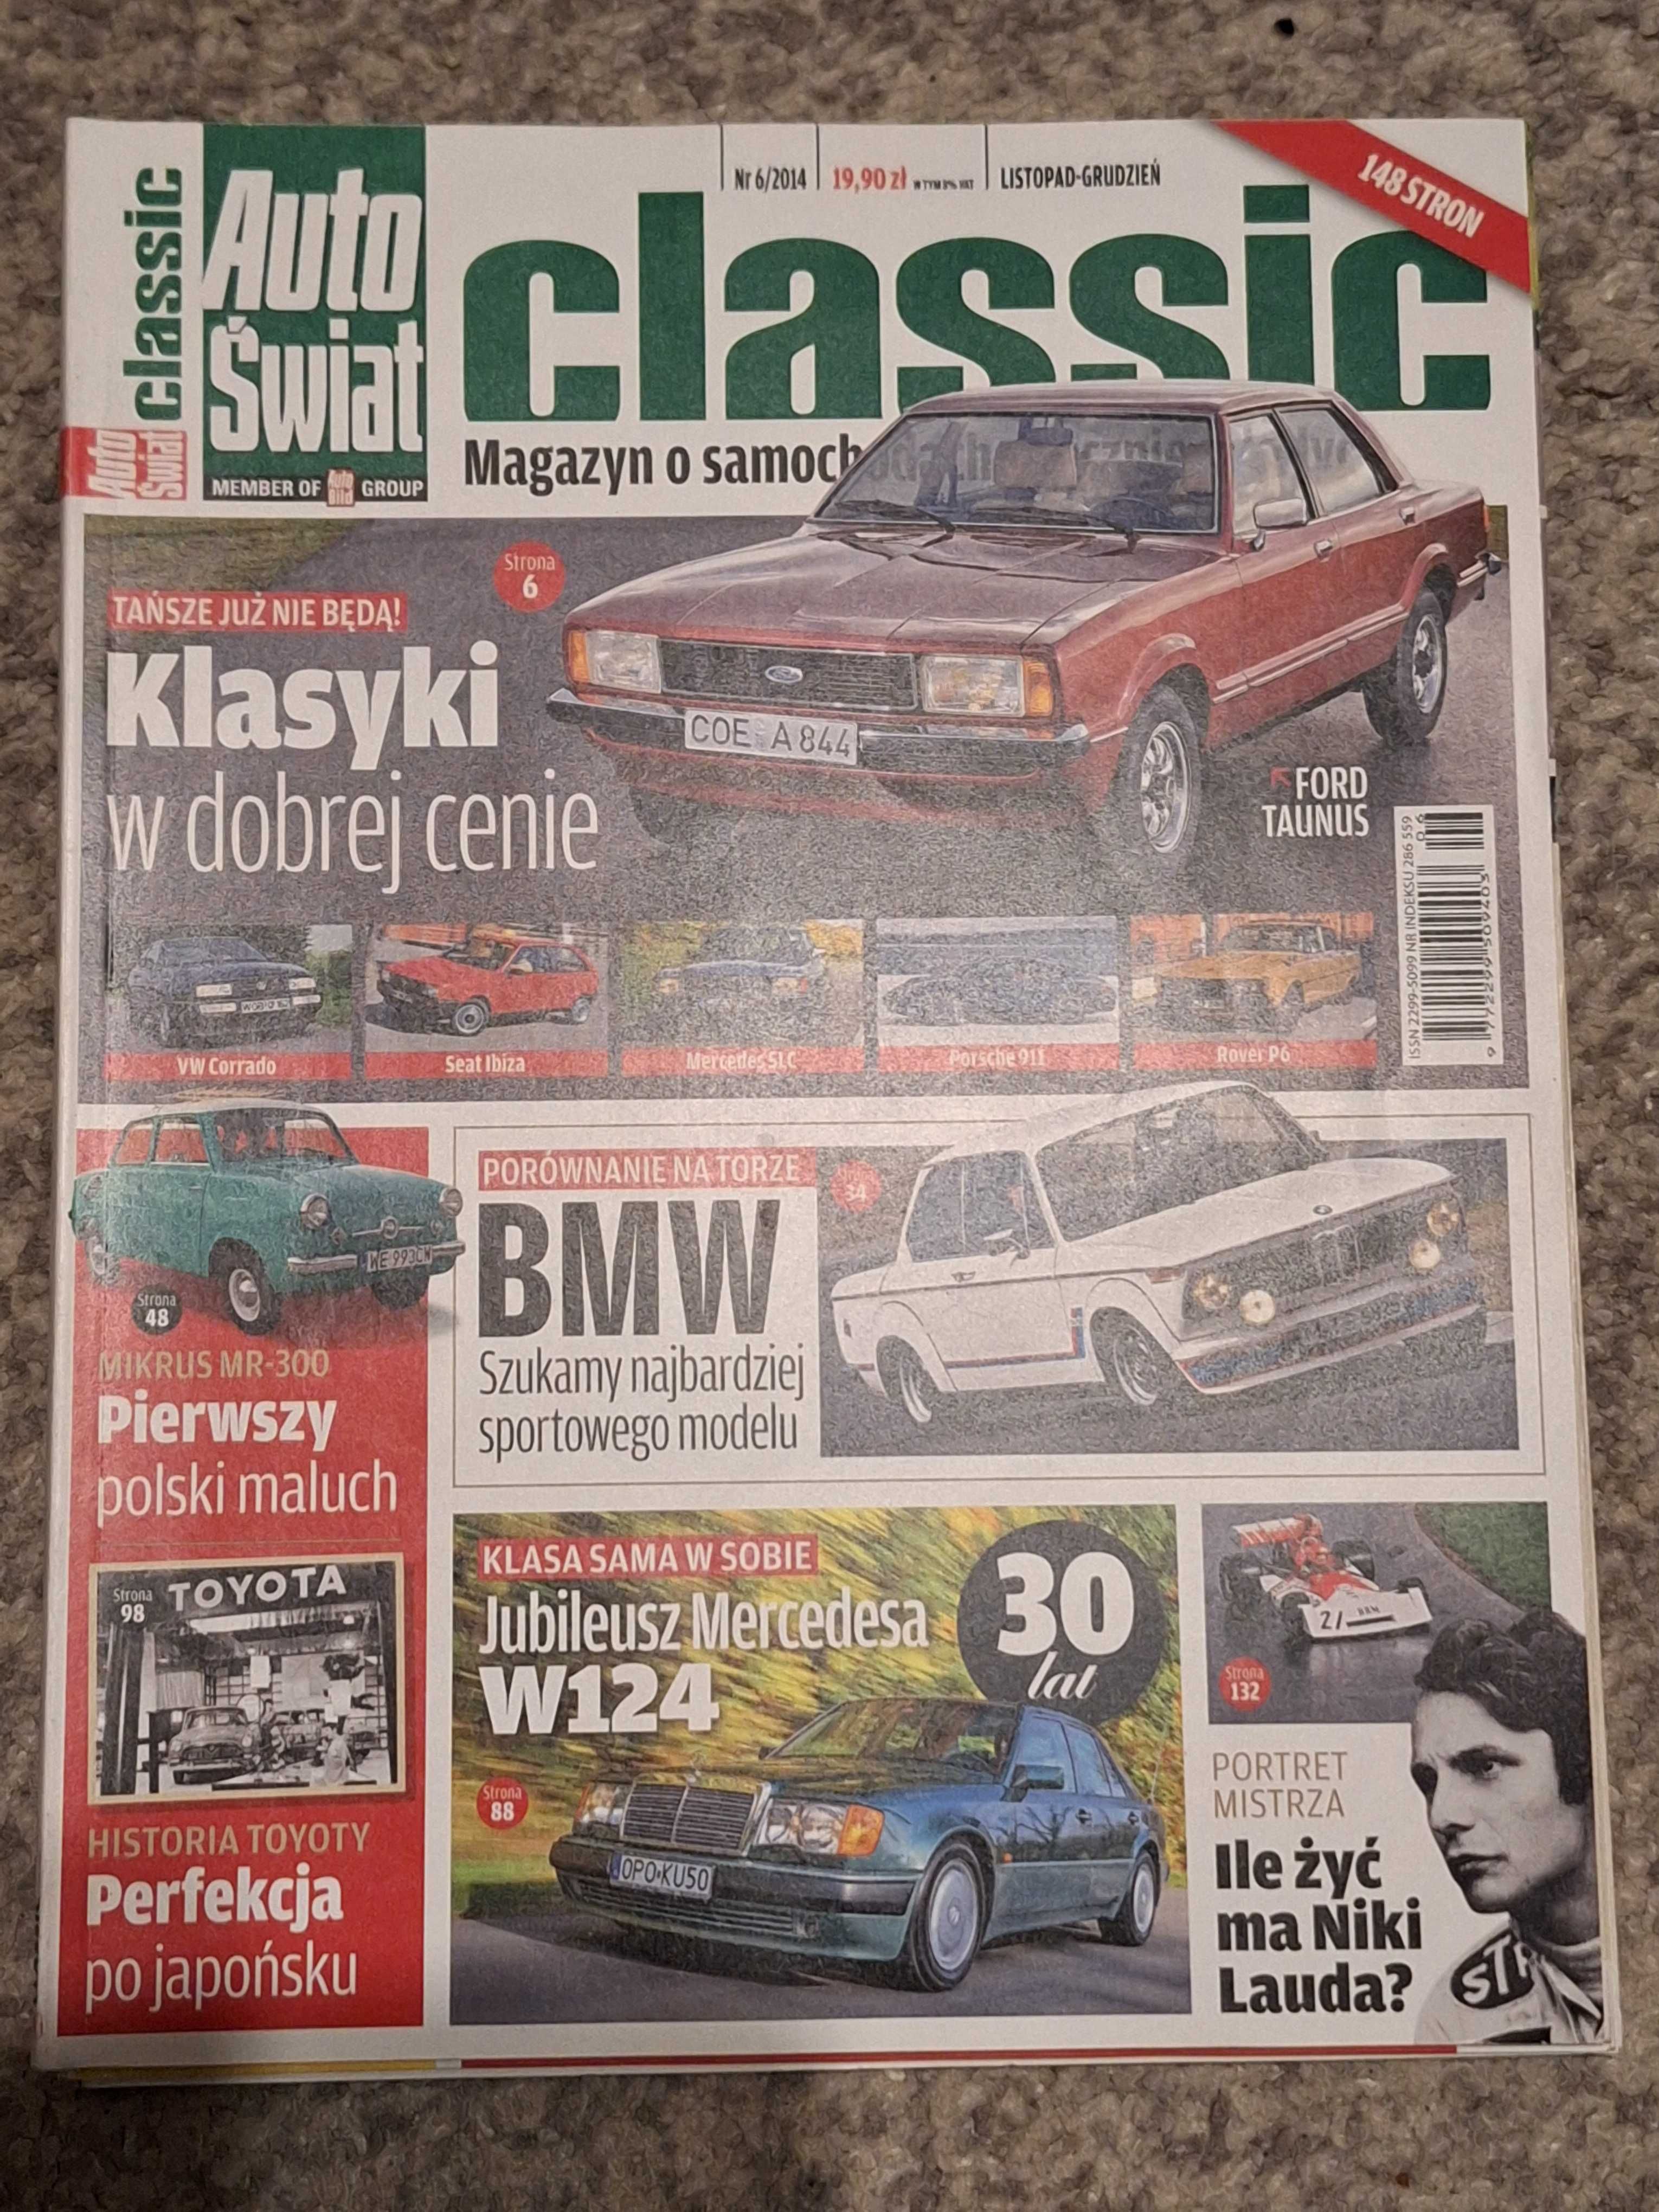 Auto Świat Classic 6/2014